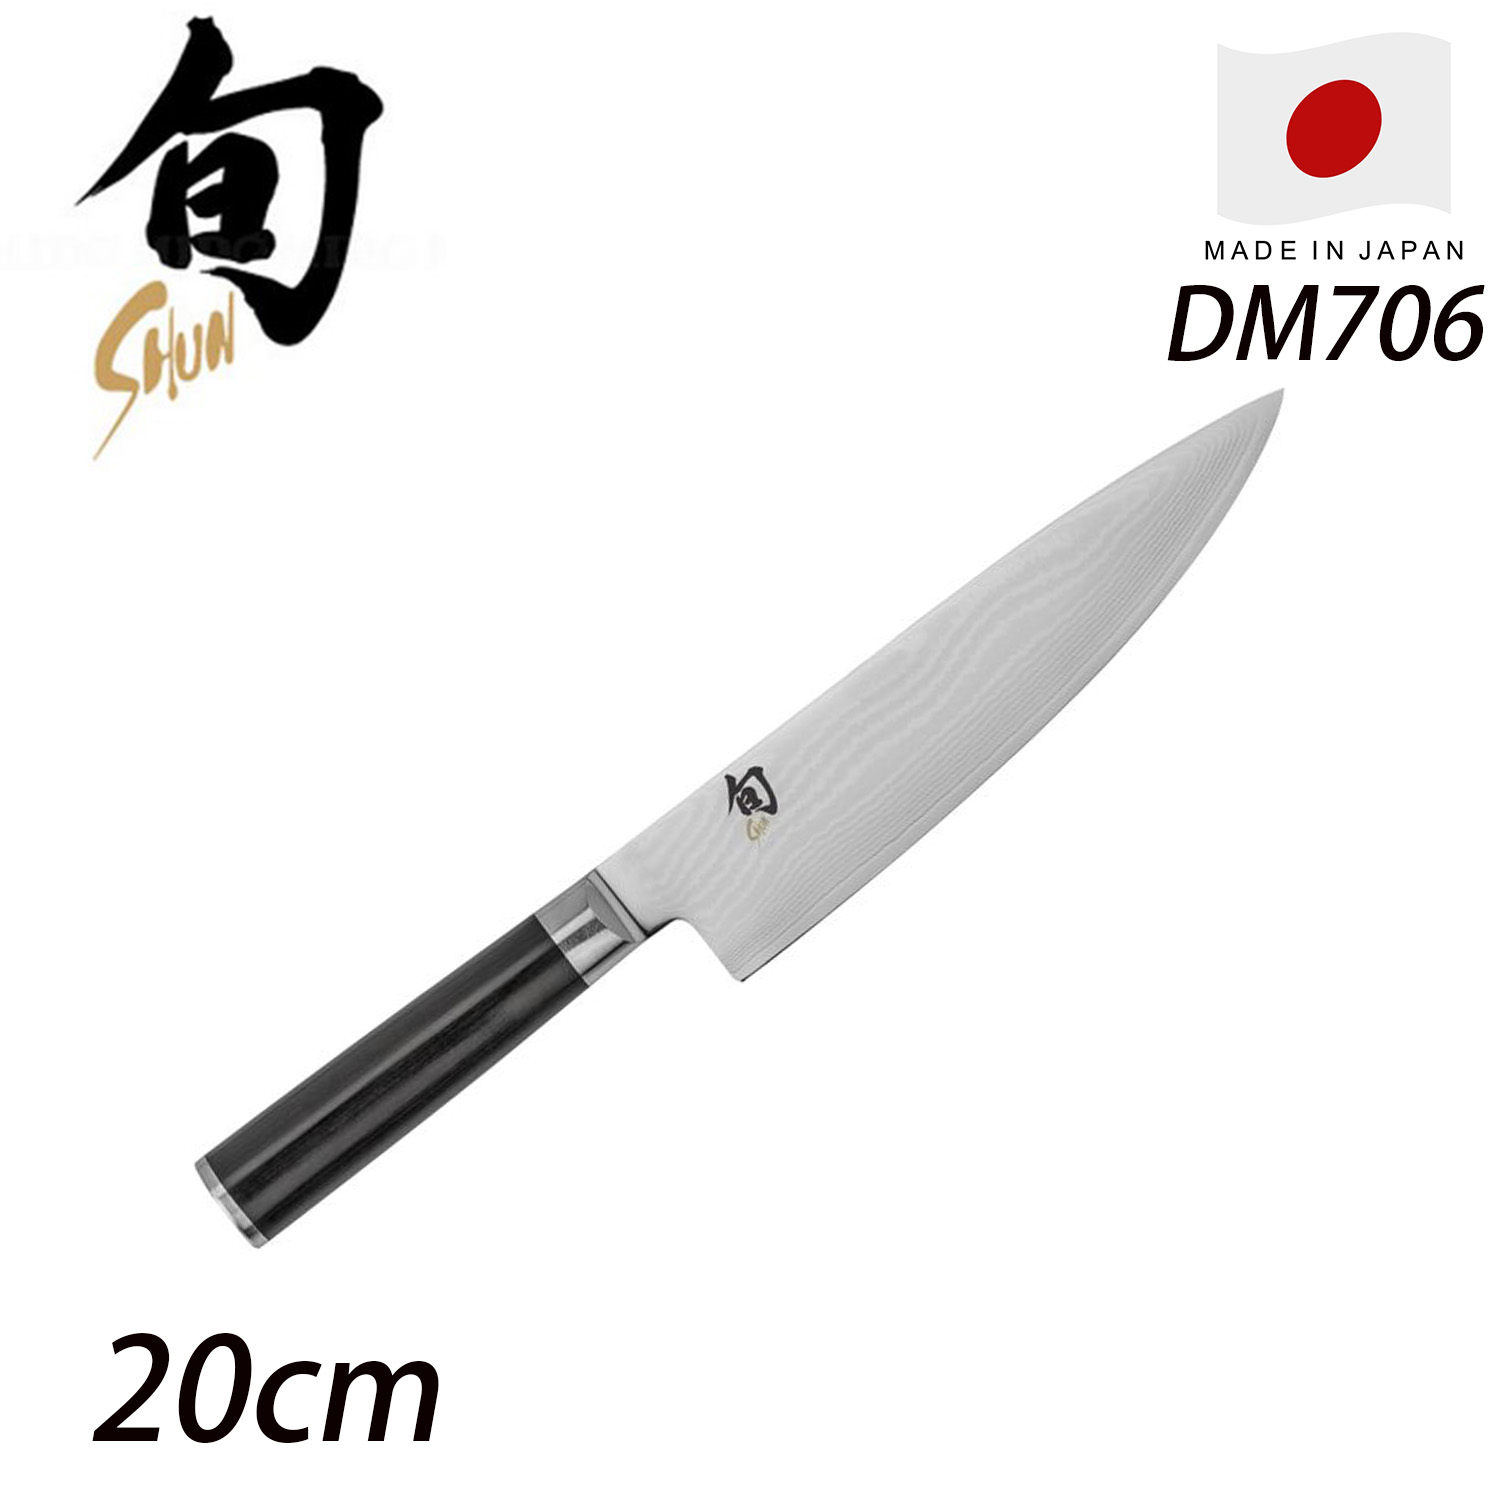 【領券滿額折100】【KAI 貝印】旬 Shun Classic 日本製主廚用刀 20cm DM-0706(高碳鋼 日本製刀具)